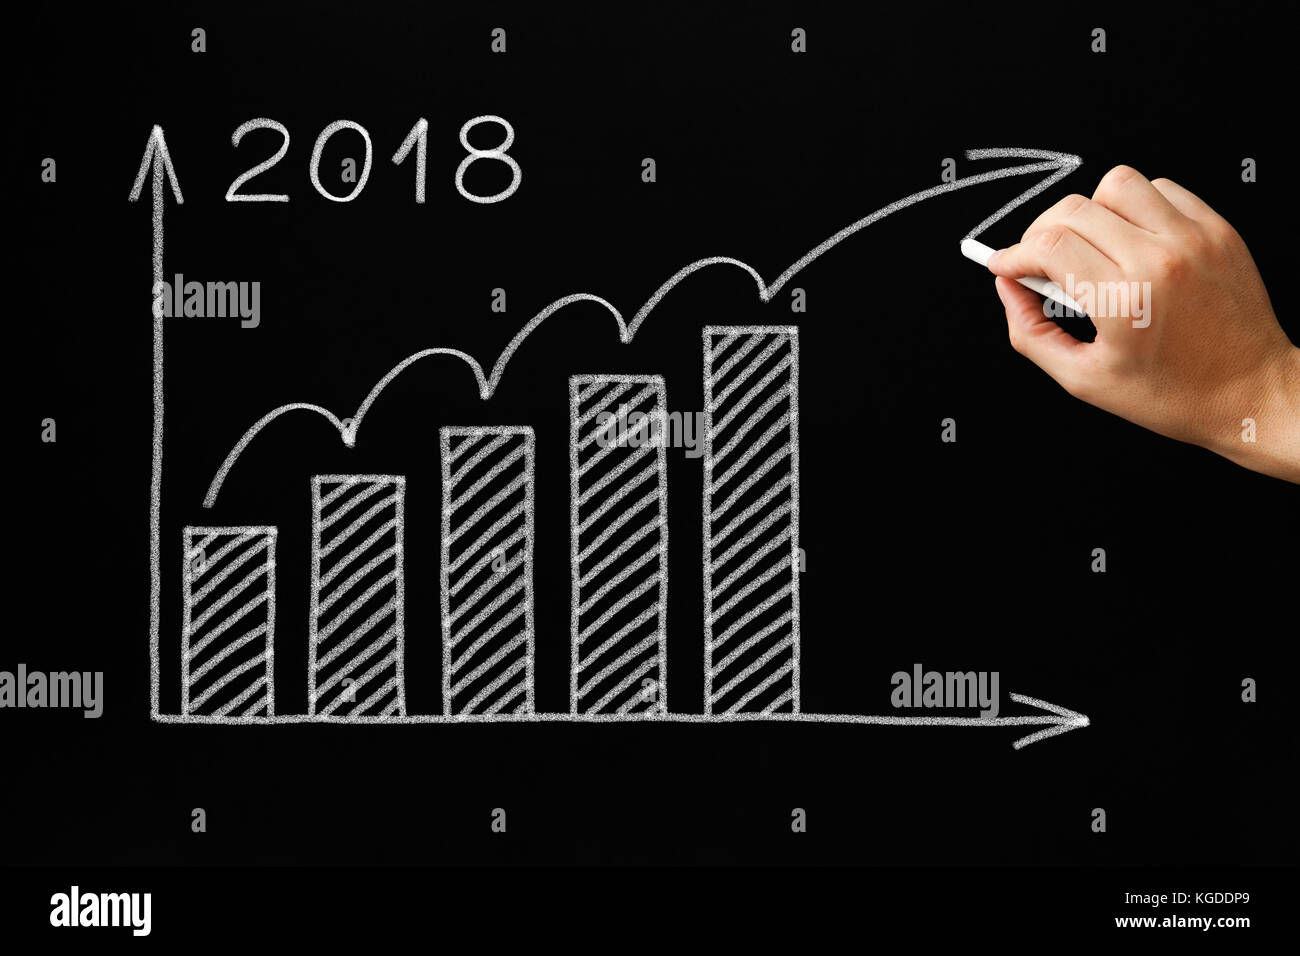 Handzeichnung Wachstum Grafik für das Jahr 2018 mit Kreide auf die Tafel. Stockfoto